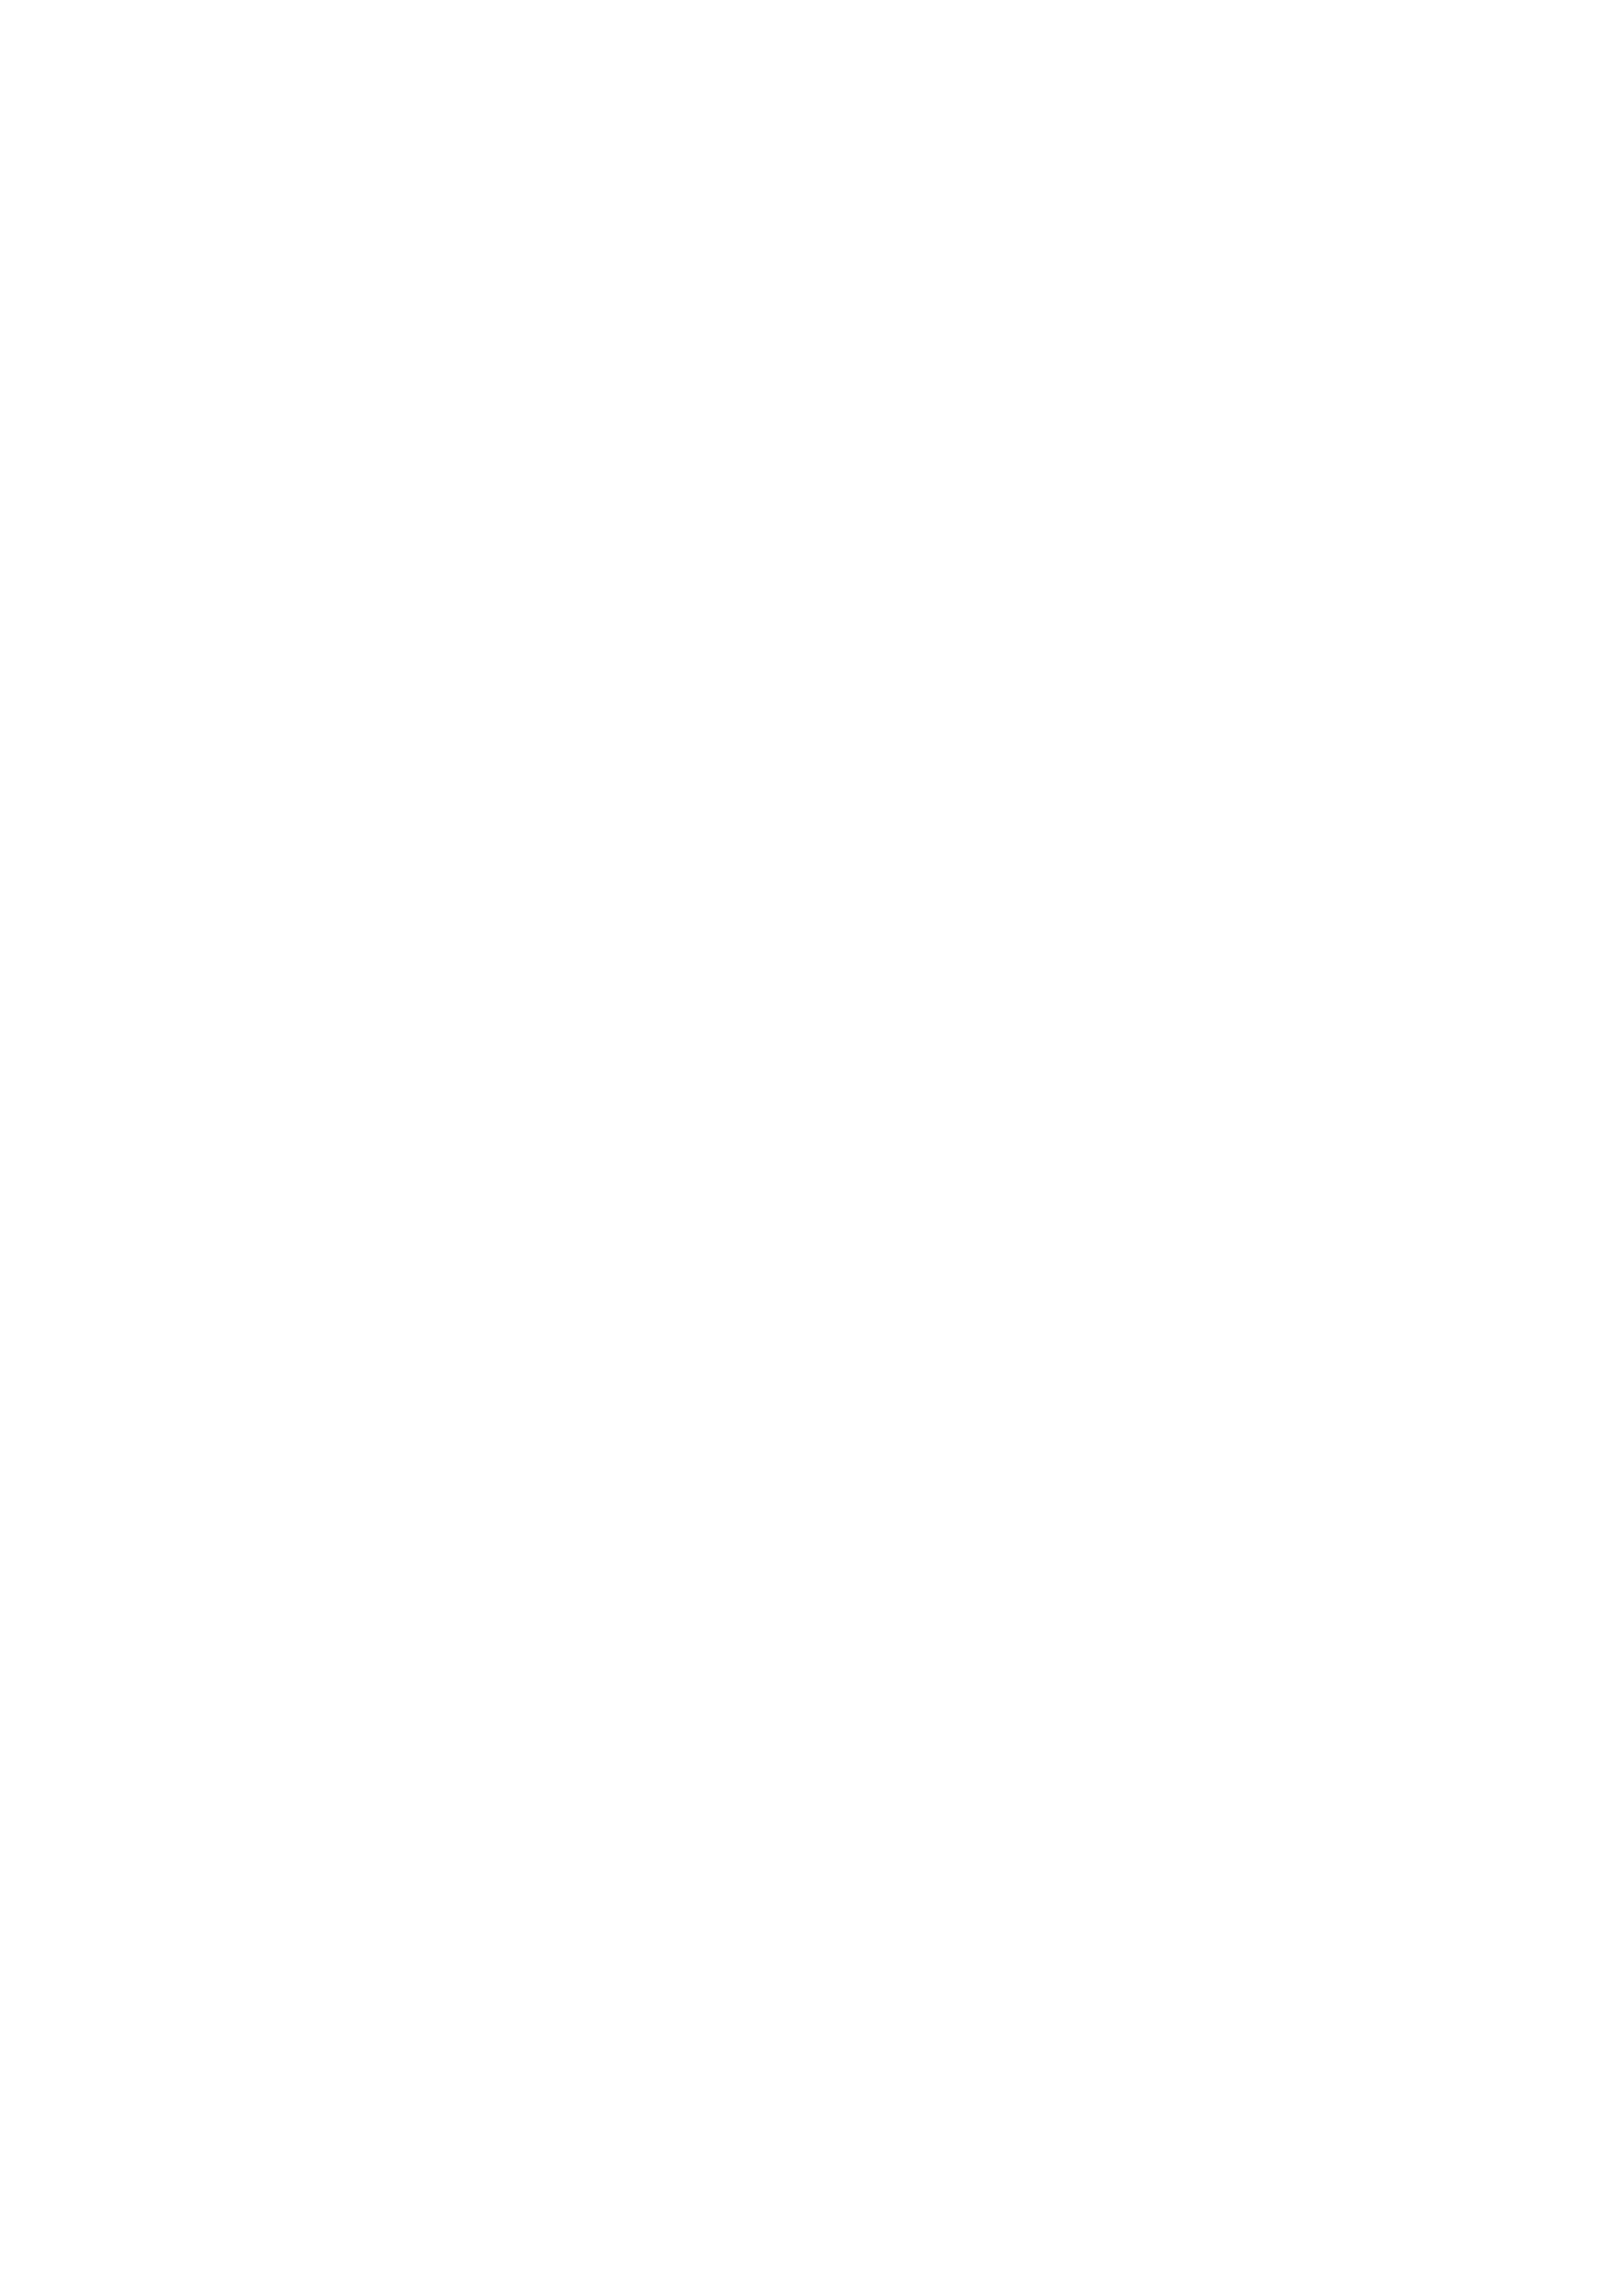 Ortus Energy